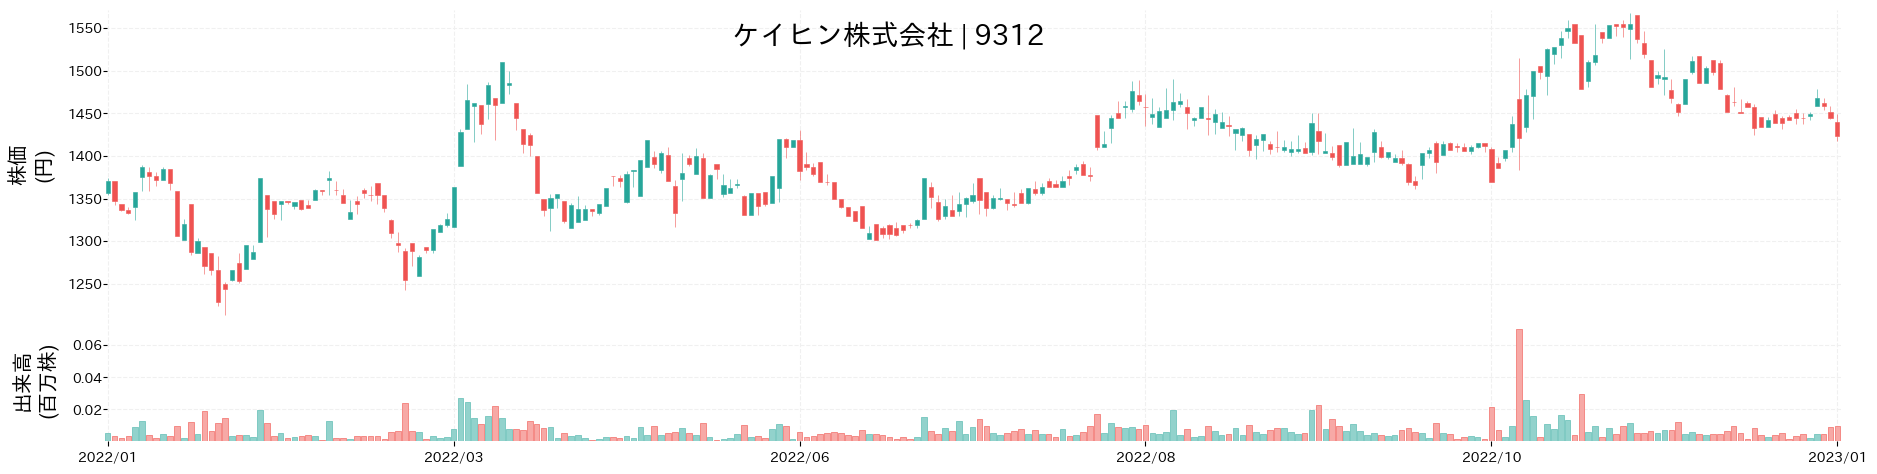 ケイヒンの株価推移(2022)